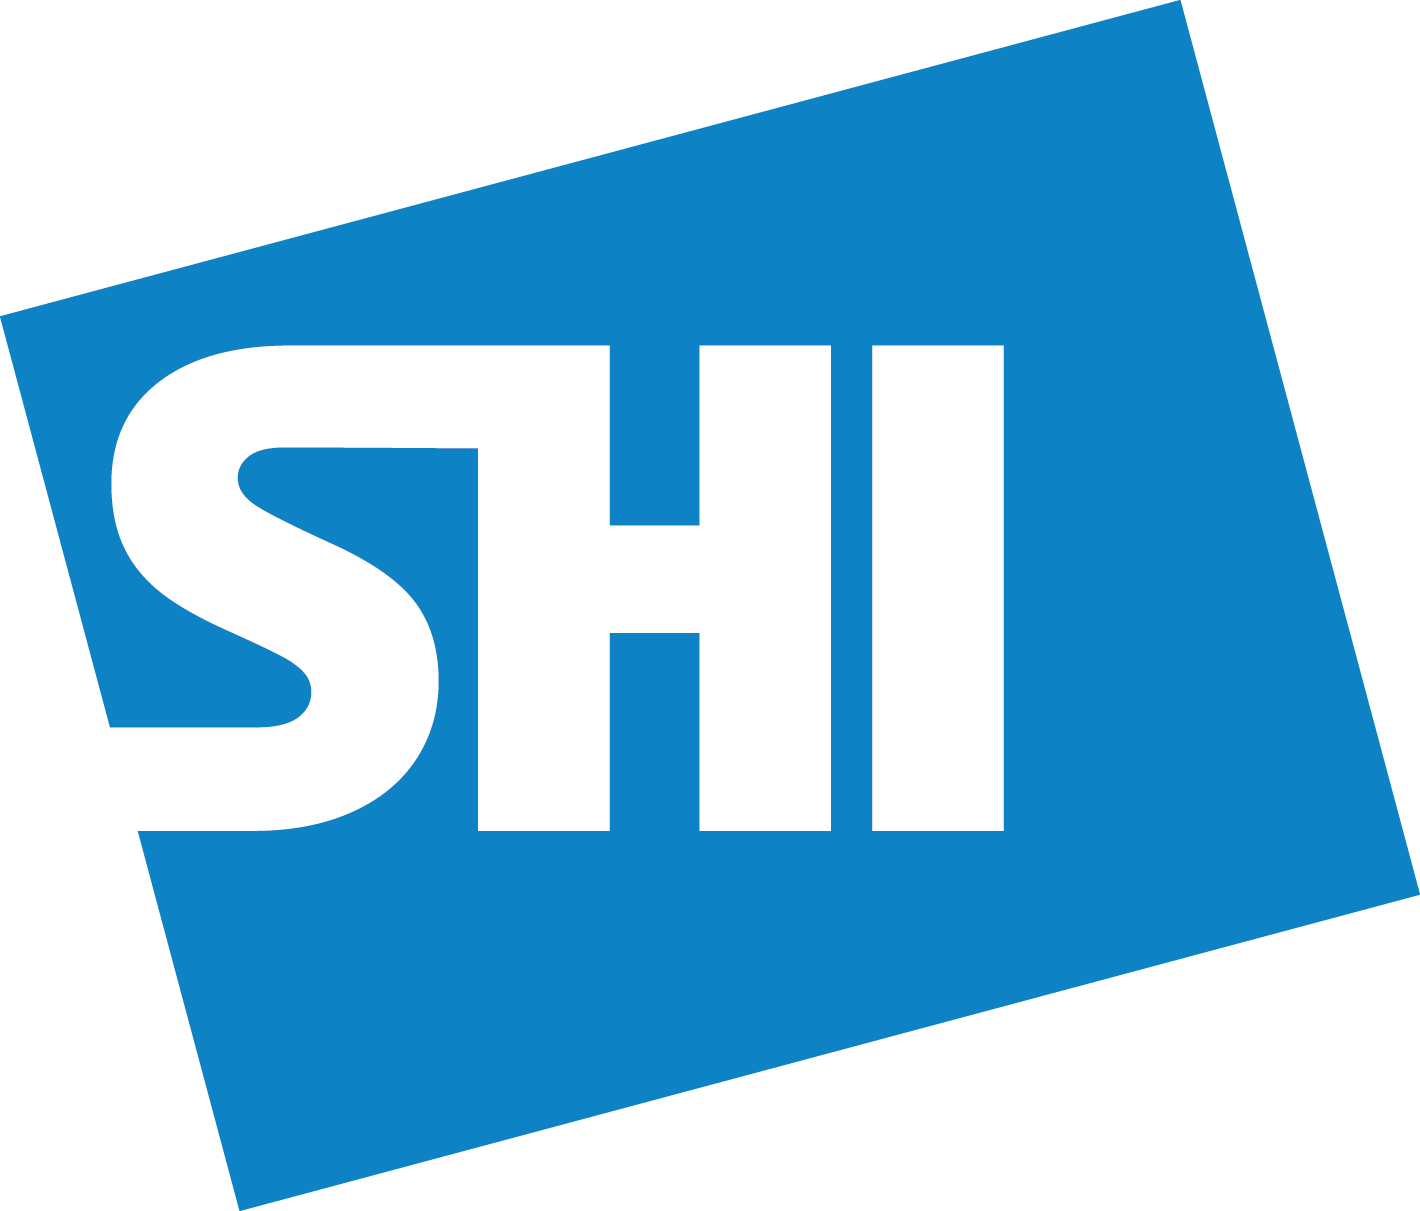 SHI Logo